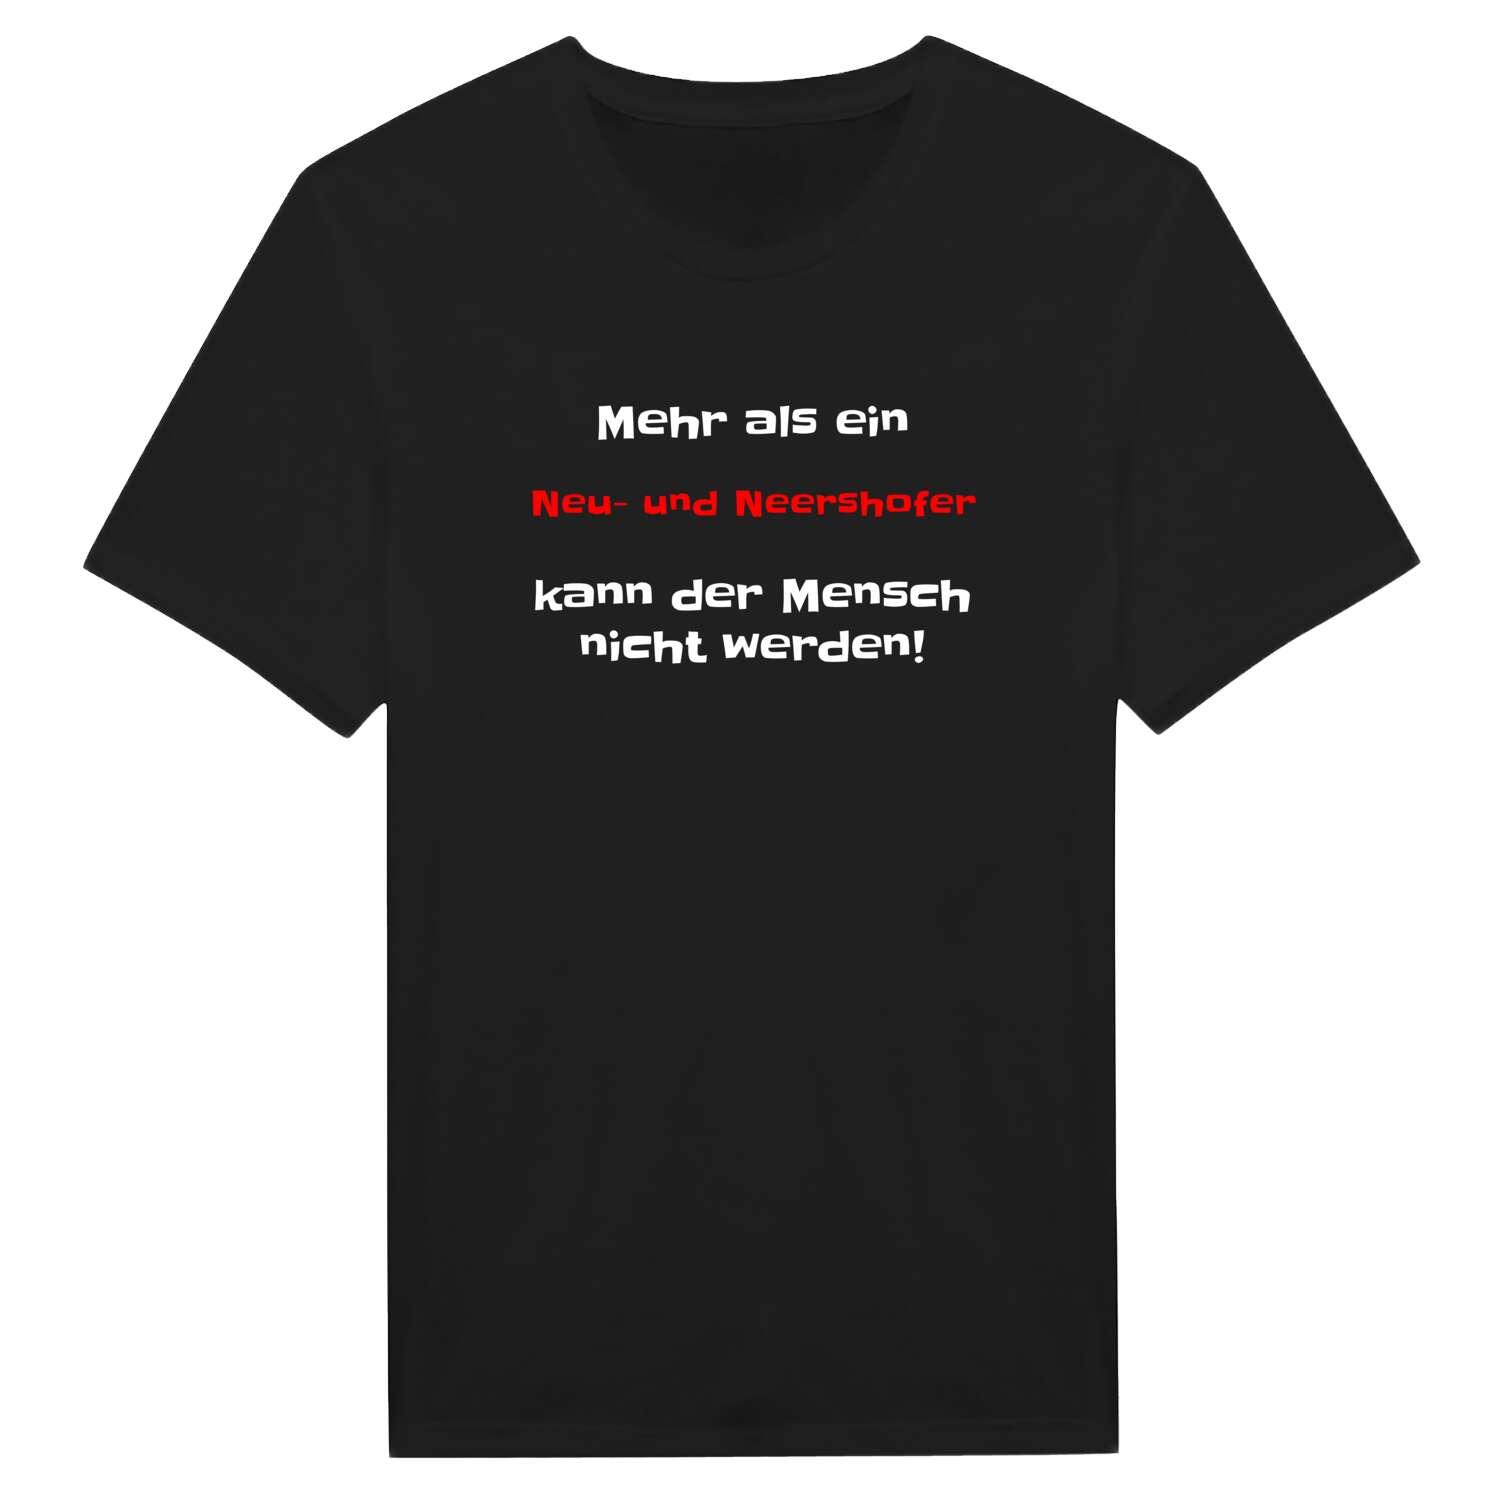 Neu- und Neershof T-Shirt »Mehr als ein«